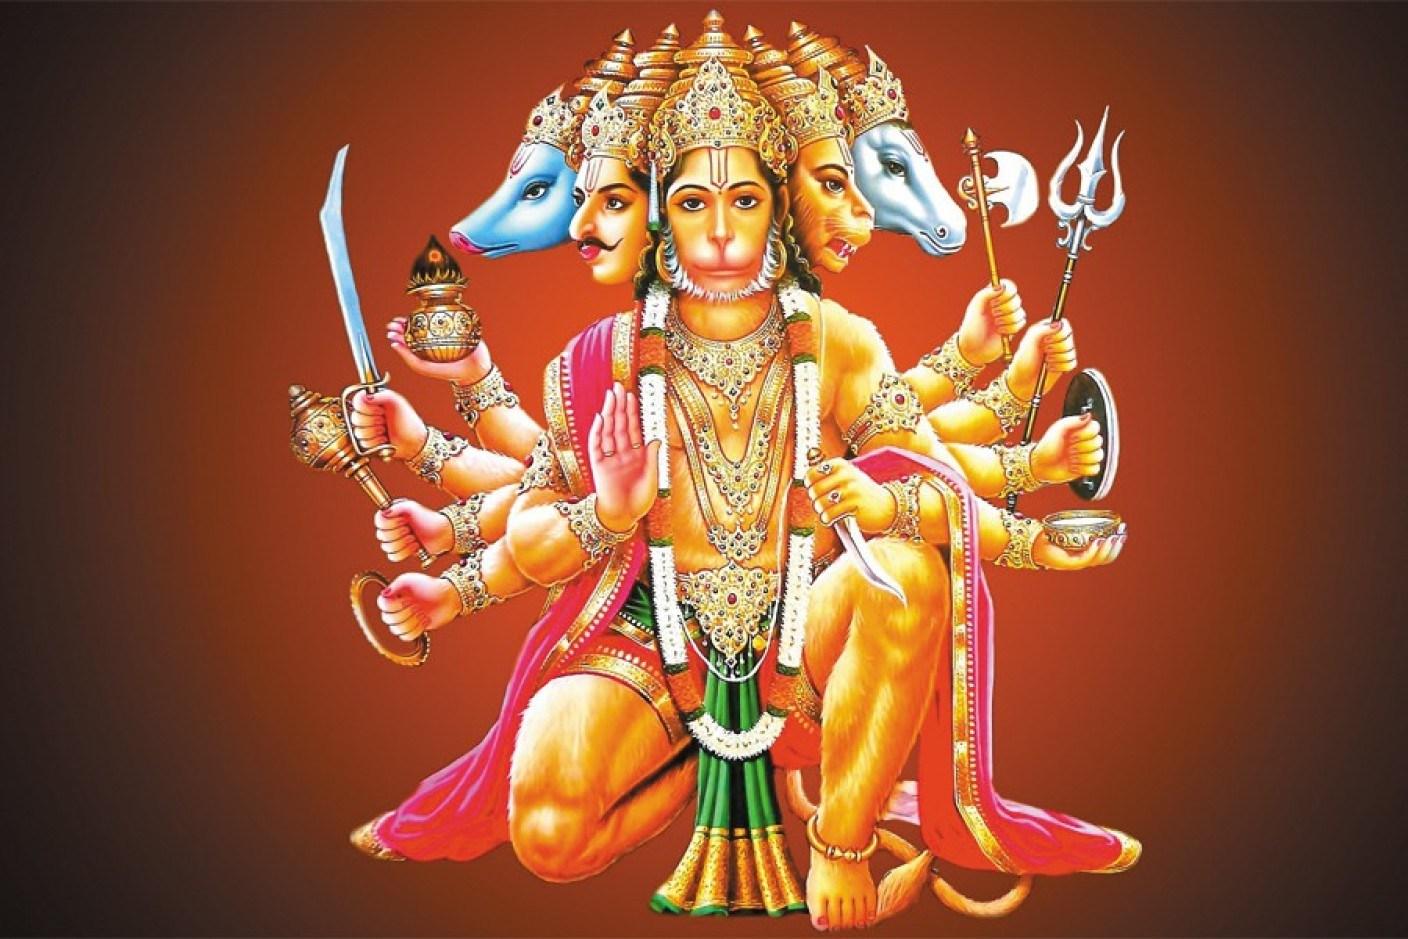 Hanuman Ji Image Full HD Download Free For Mobile Phones